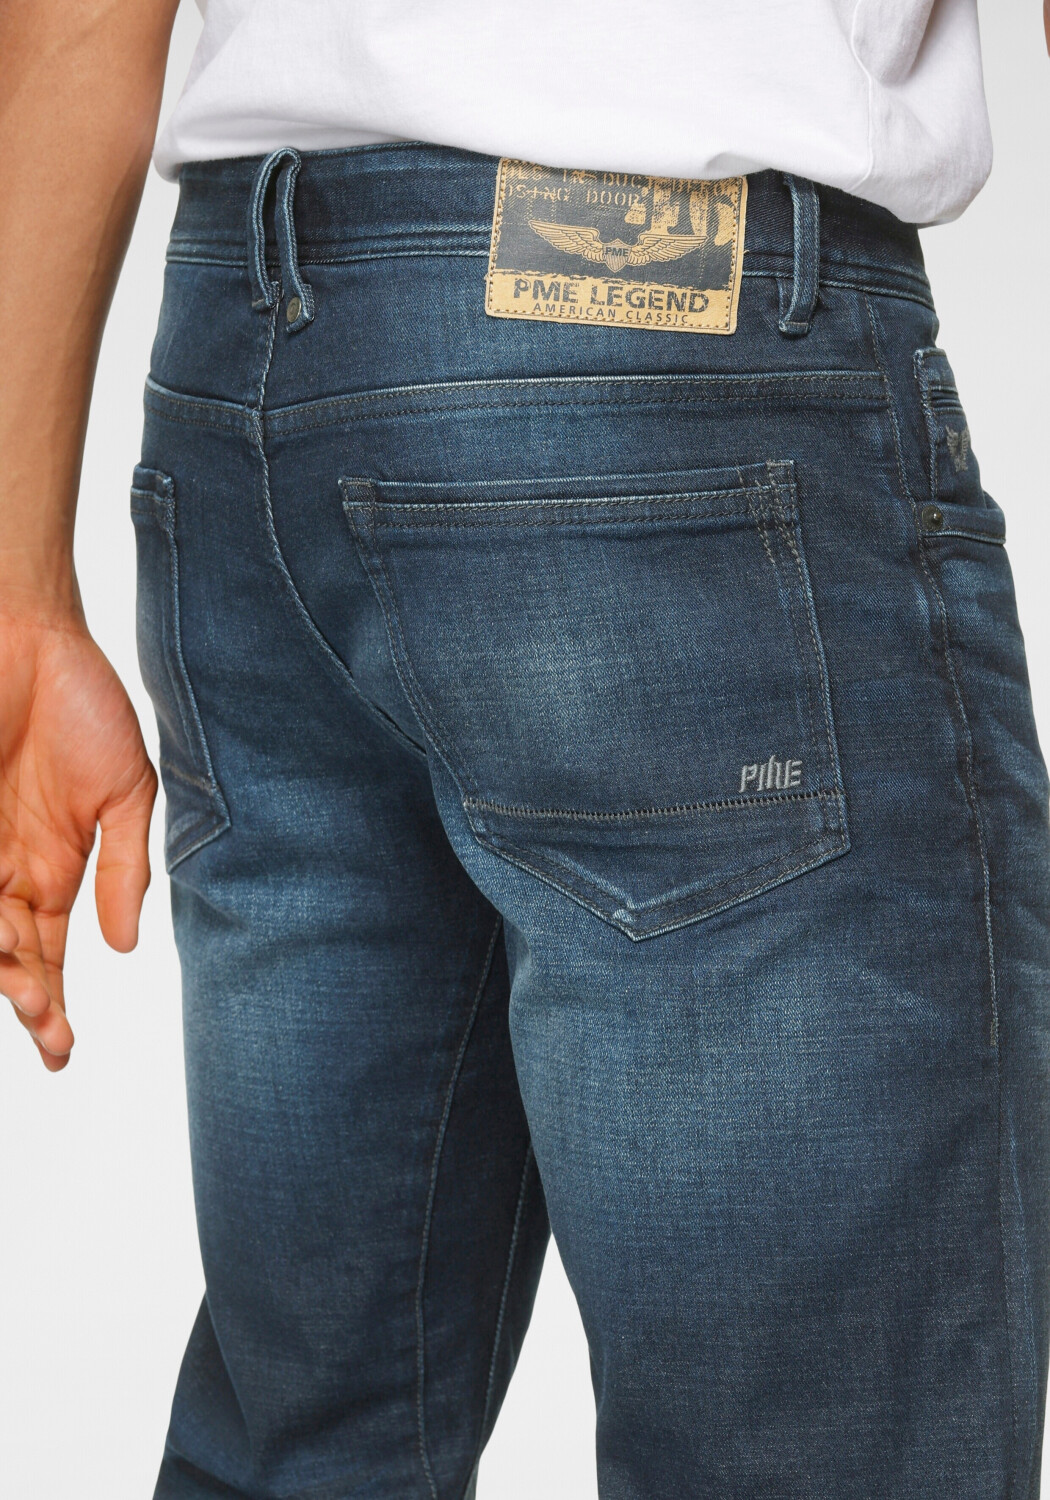 PME Legend Tailwheel Fit 49,99 wash Slim | bei Jeans € dark Preisvergleich ab